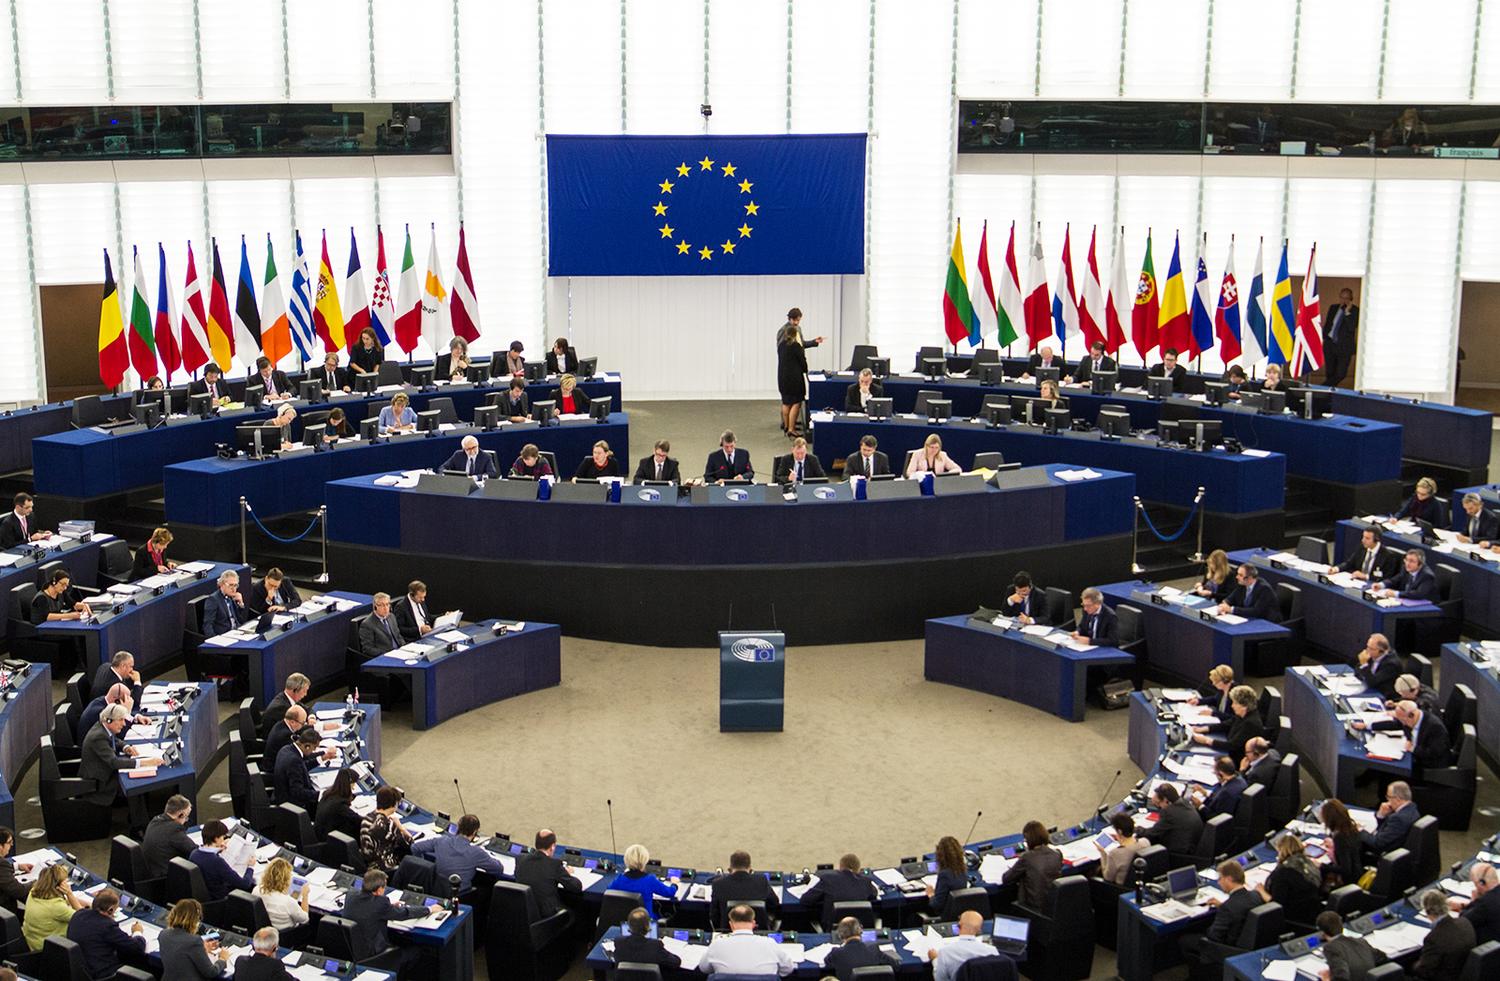 https://www.elsaltodiario.com/uploads/fotos/r1500/41e6207b/European_Parliament_Strasbourg_2015-10-28_02.jpg?v=63680384900